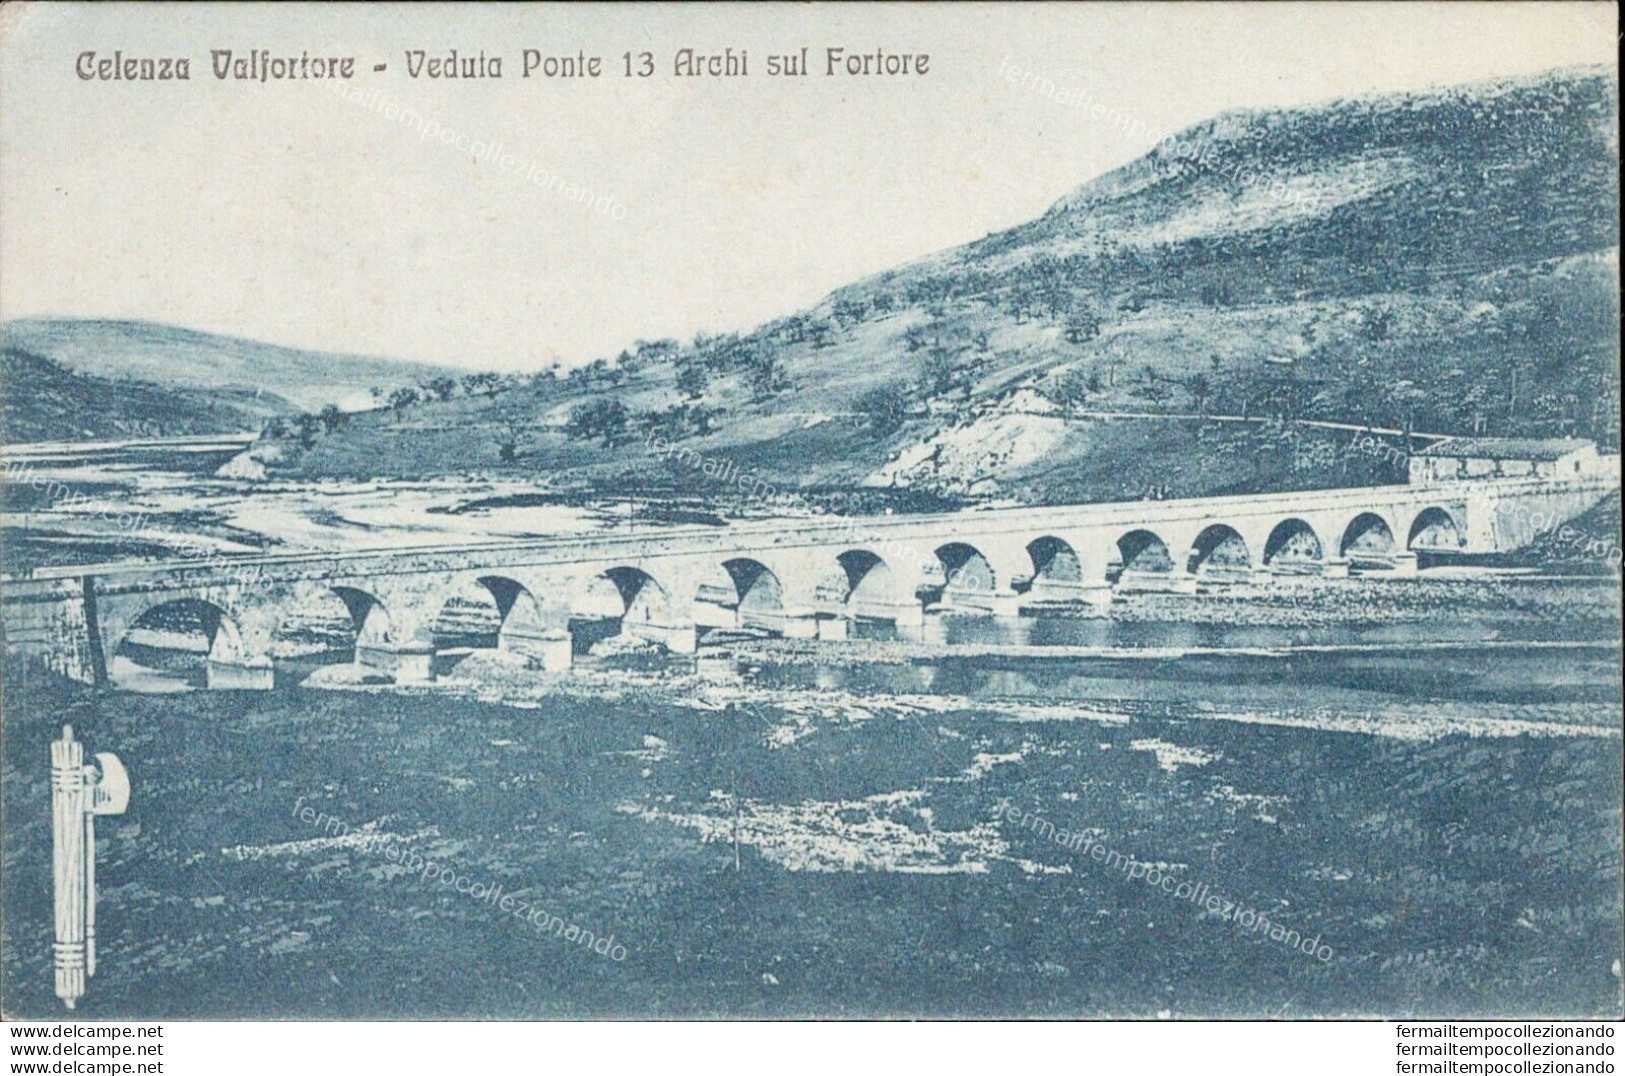 Ai468 Cartolina Calenza Valfortore Veduta Ponte 13 Archi Sul Fortore Fascio 1931 - Foggia